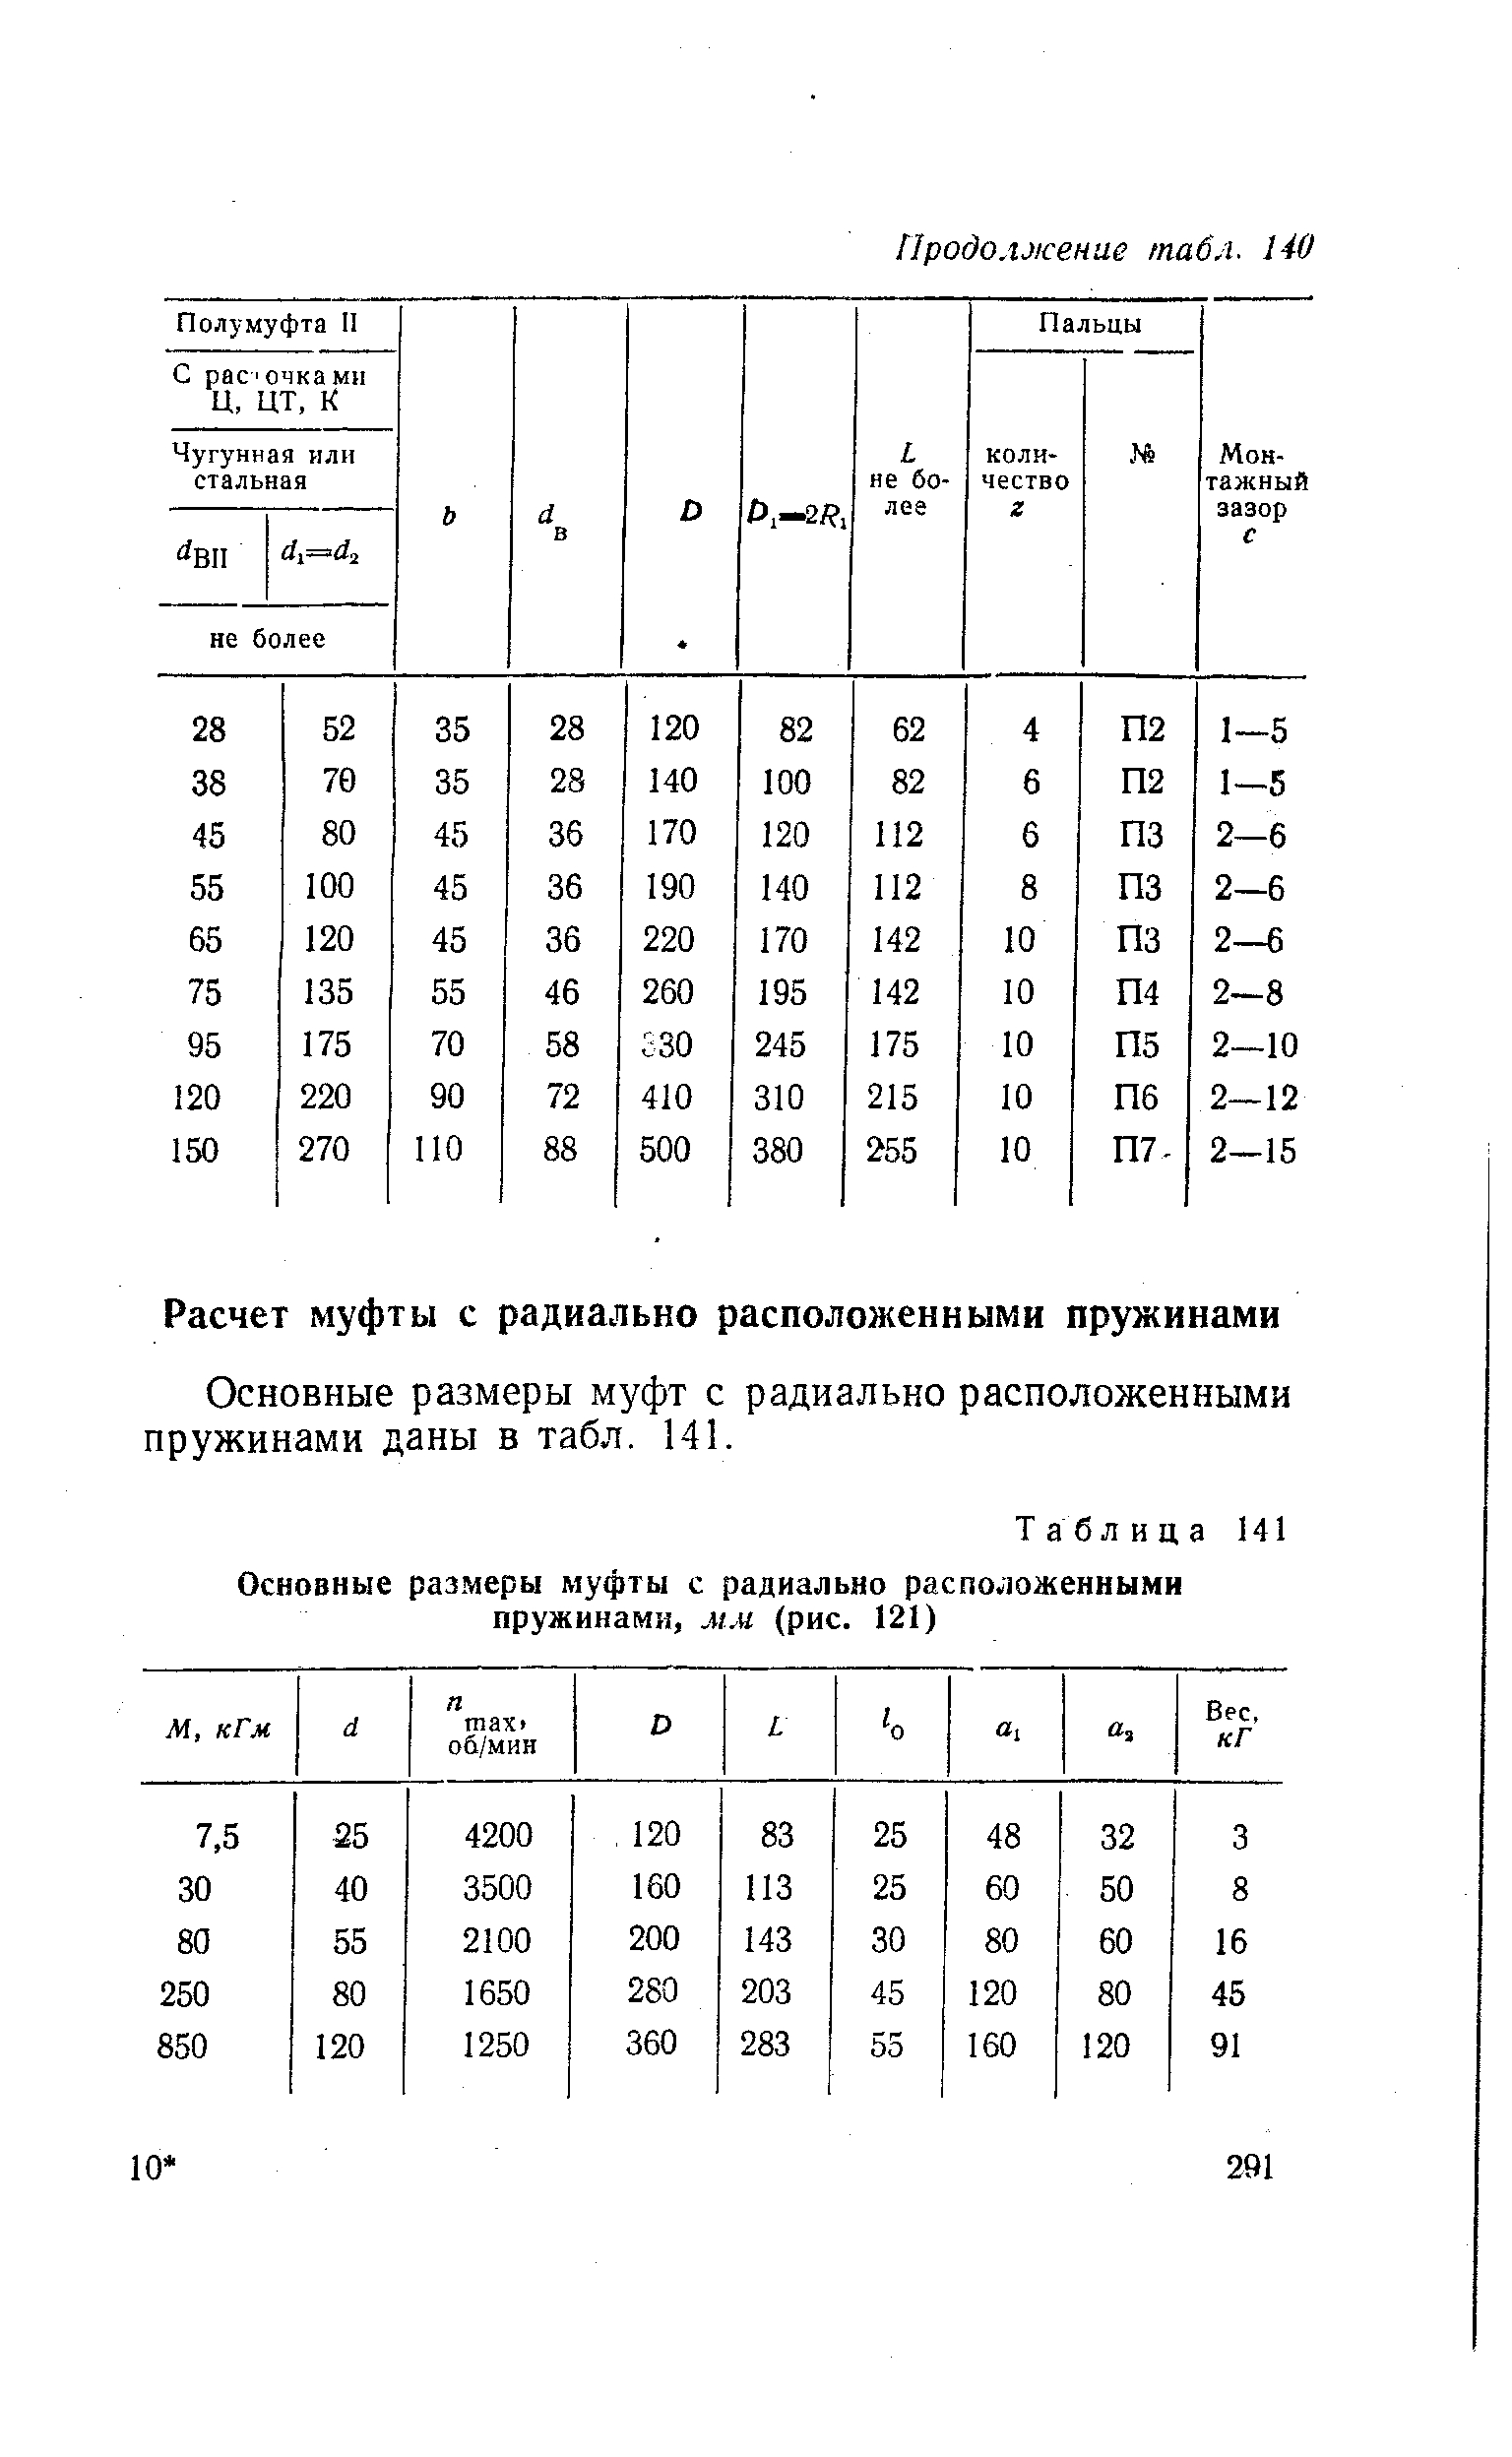 Основные размеры муфт с радиально расположенными пружинами даны в табл. 141.
